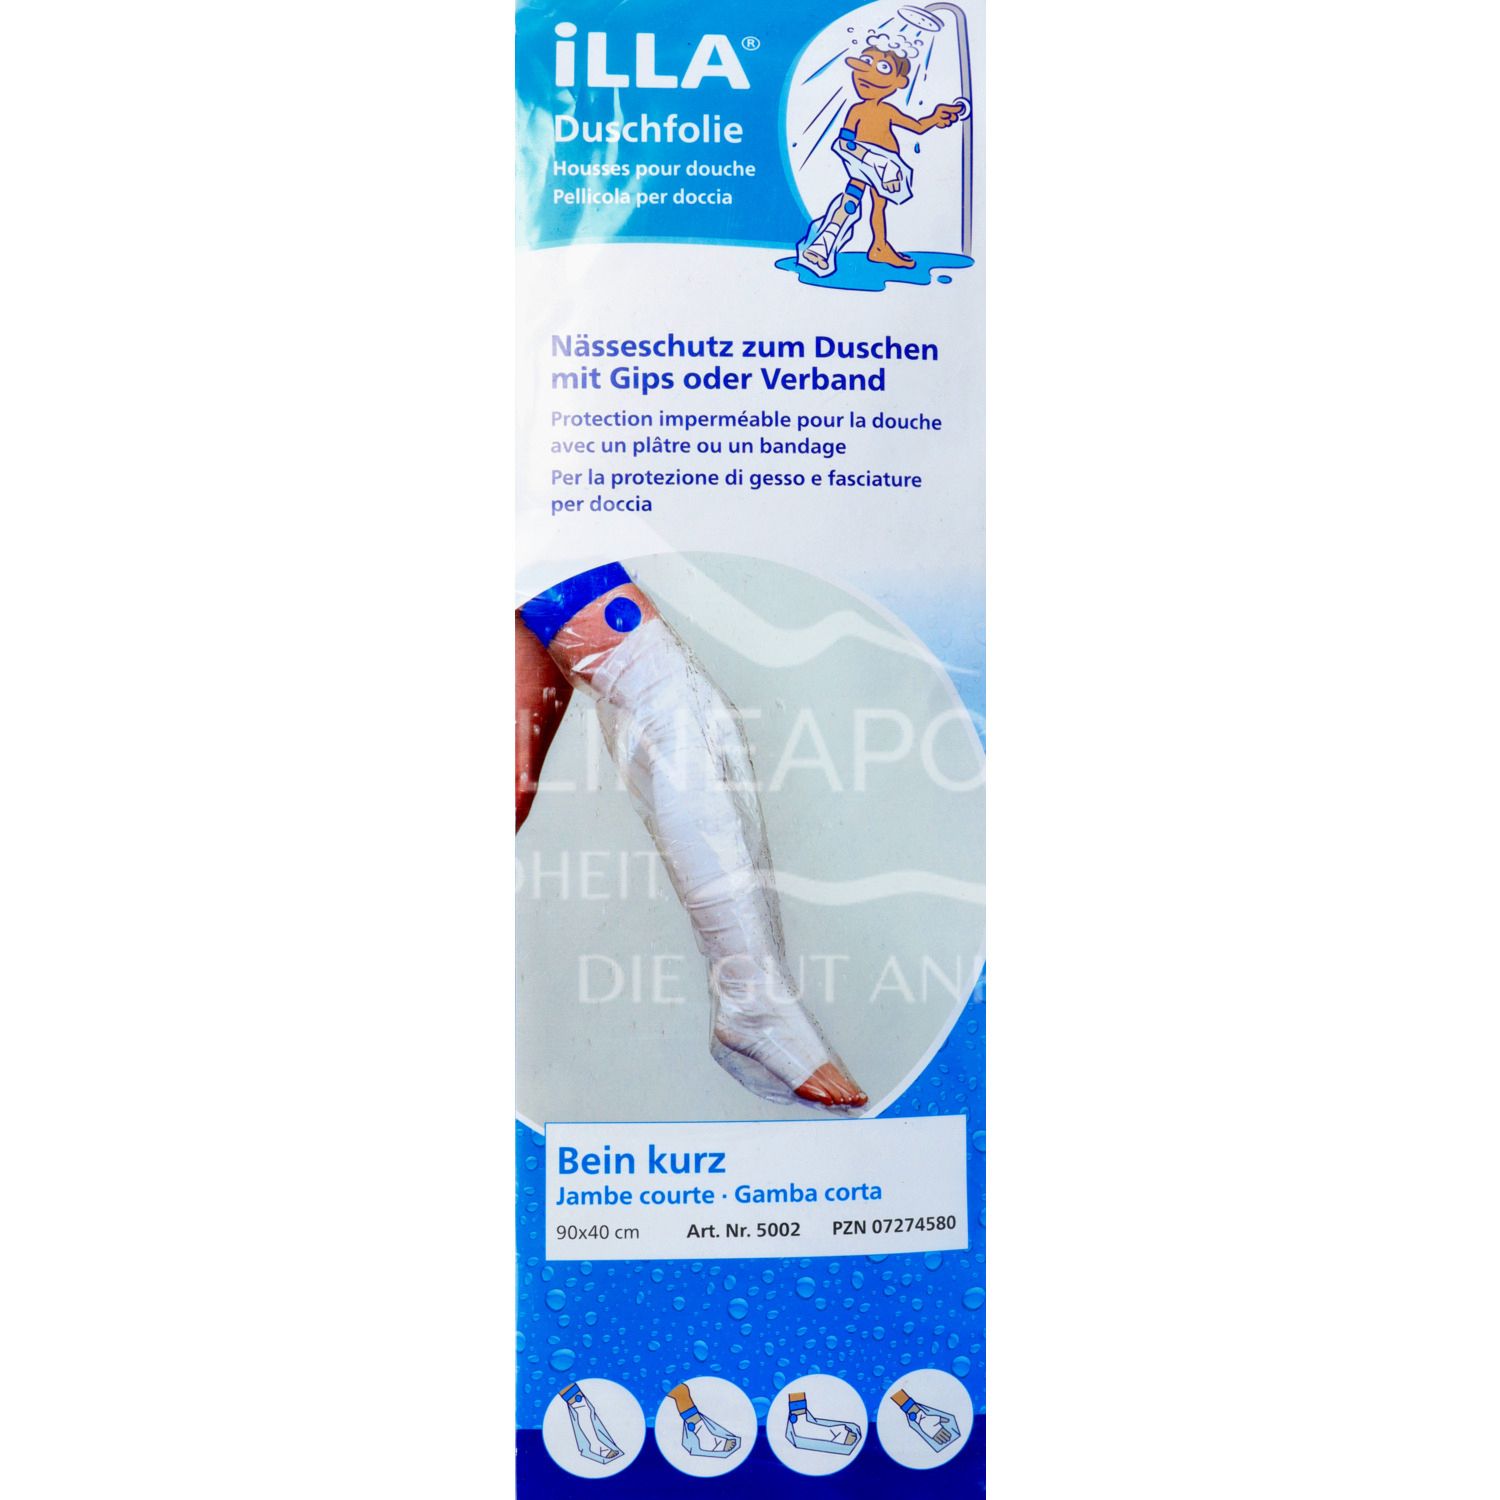 ILLA® Duschschutzfolien Bein kurz 90 x 40 cm